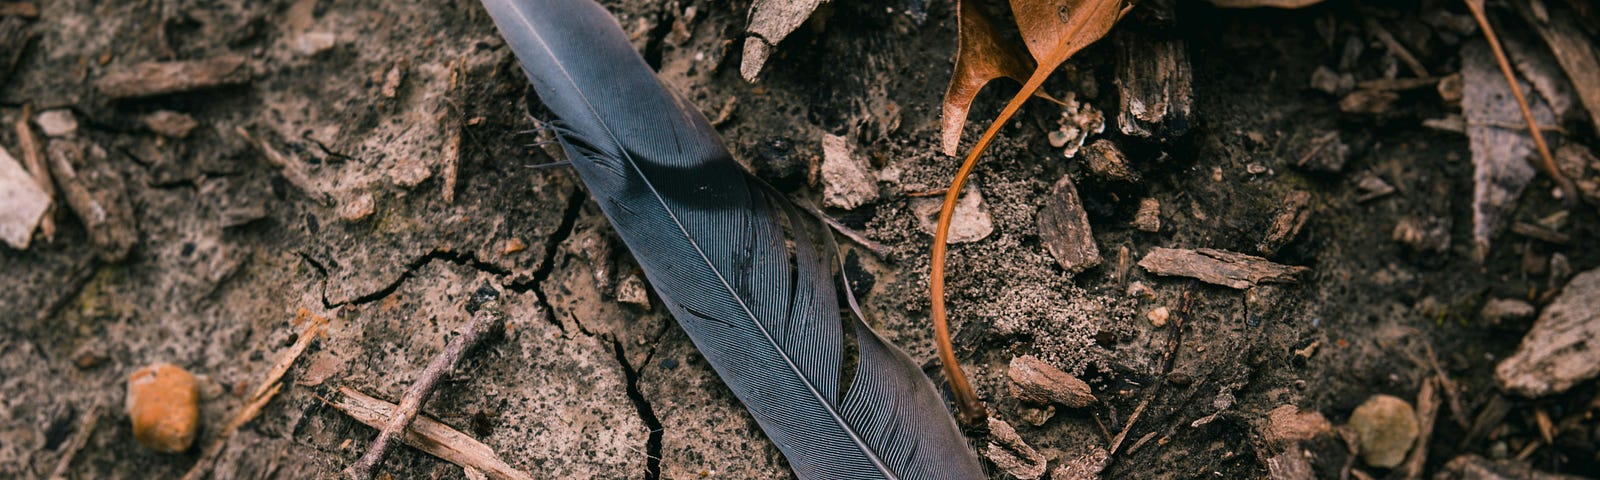 A bird feather on a forest floor.